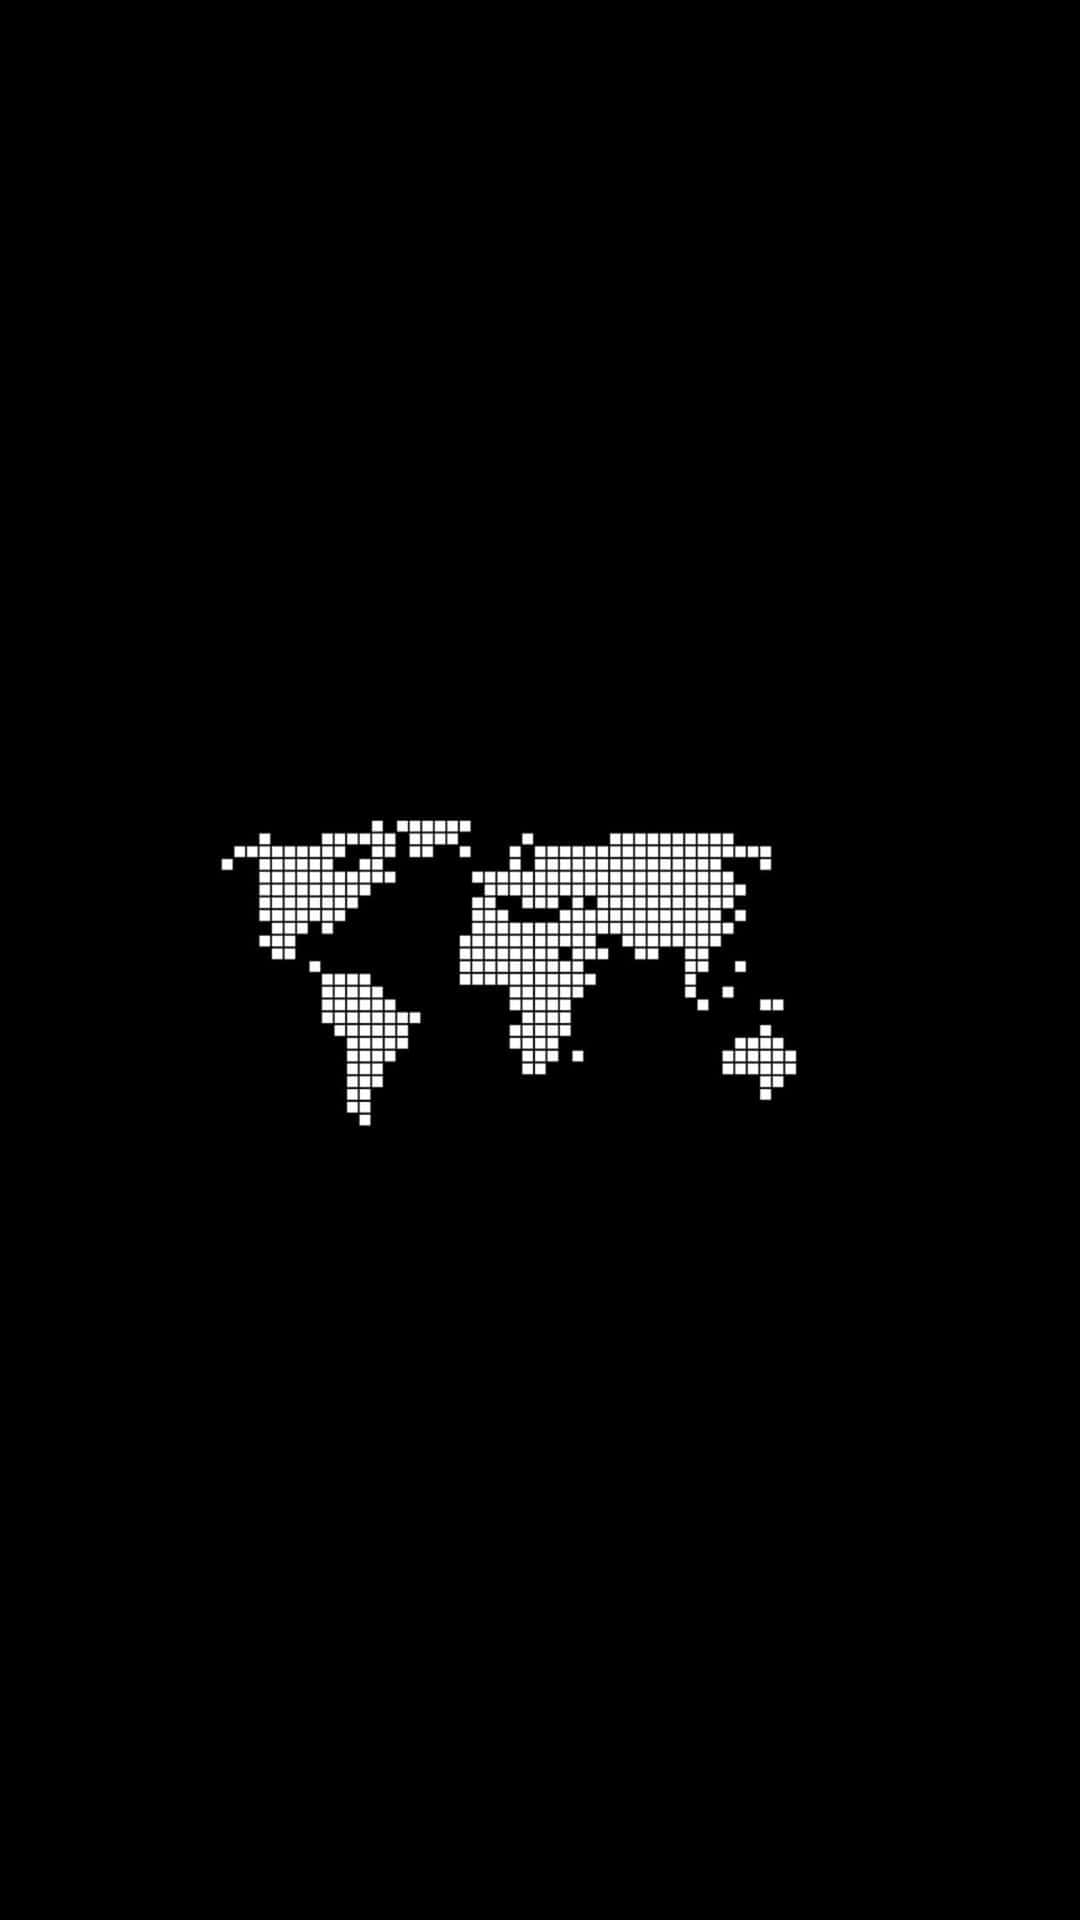 Fondode Pantalla Amoled Del Google Pixel 3xl Con Mapa Del Mundo